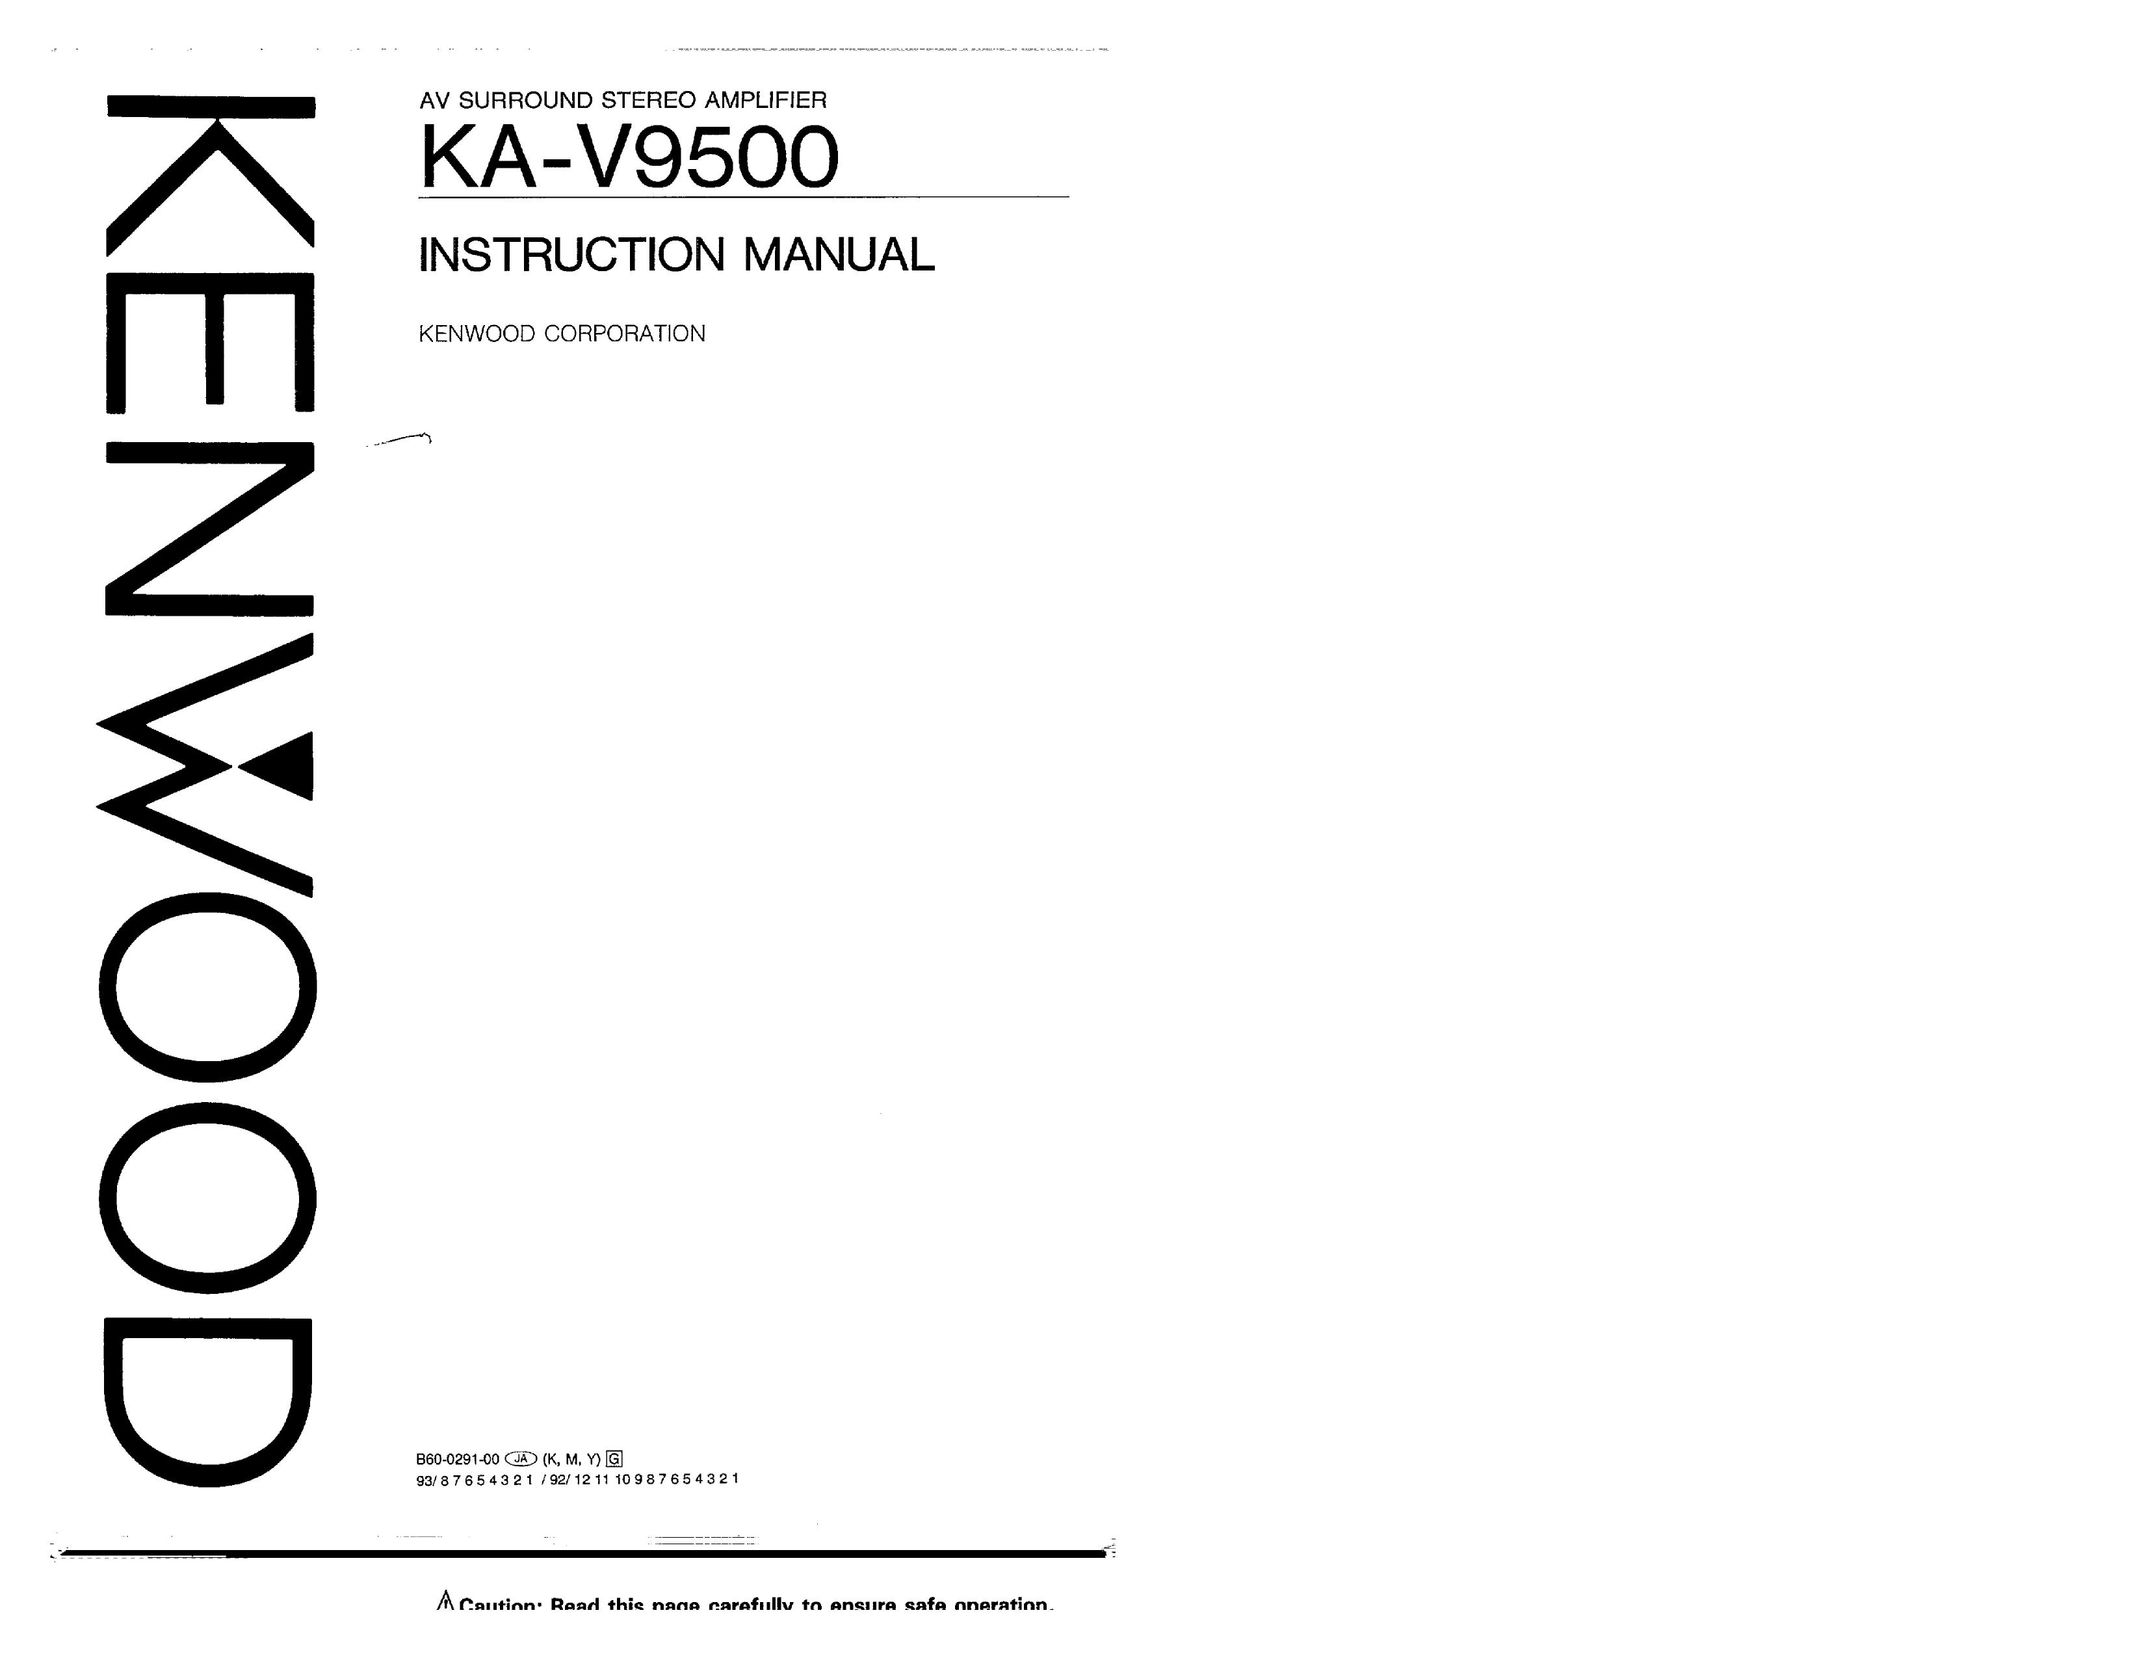 Kenwood KA-V9500 Stereo Amplifier User Manual